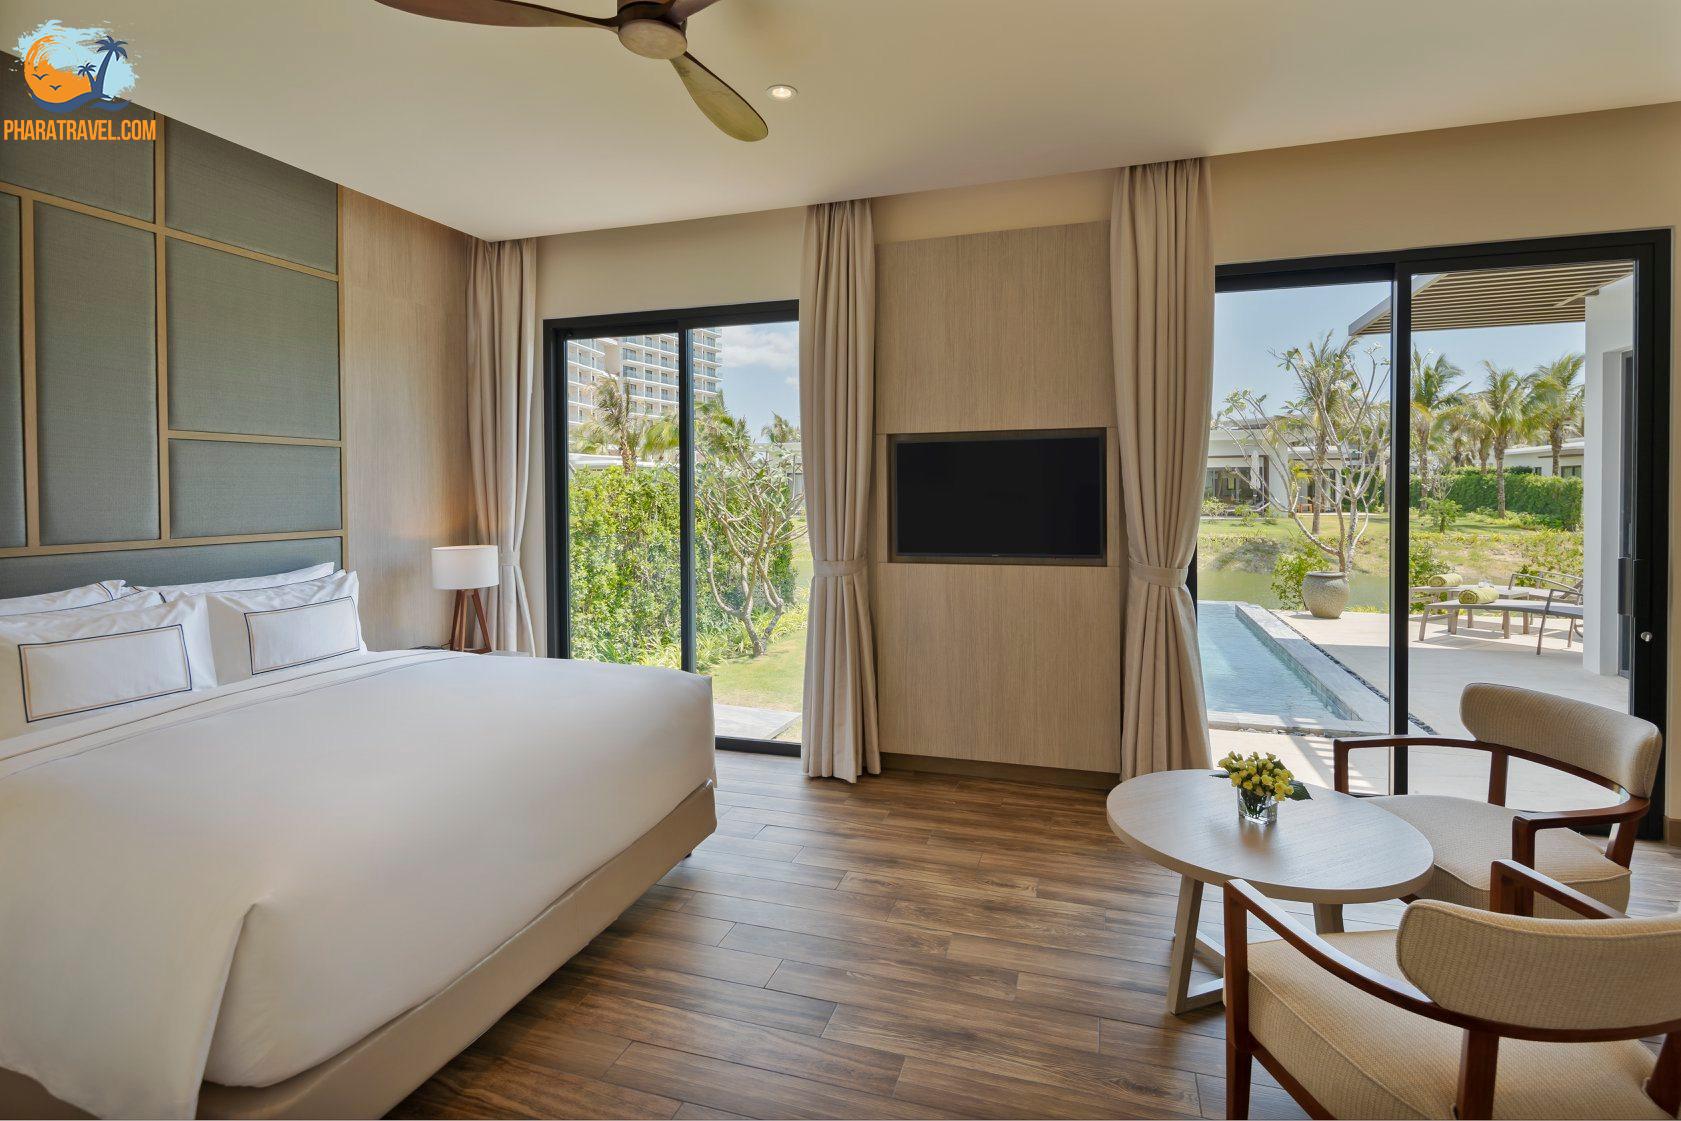 Melia Hồ Tràm beach resort: Khu nghỉ dưỡng sang trọng tại Vũng Tàu